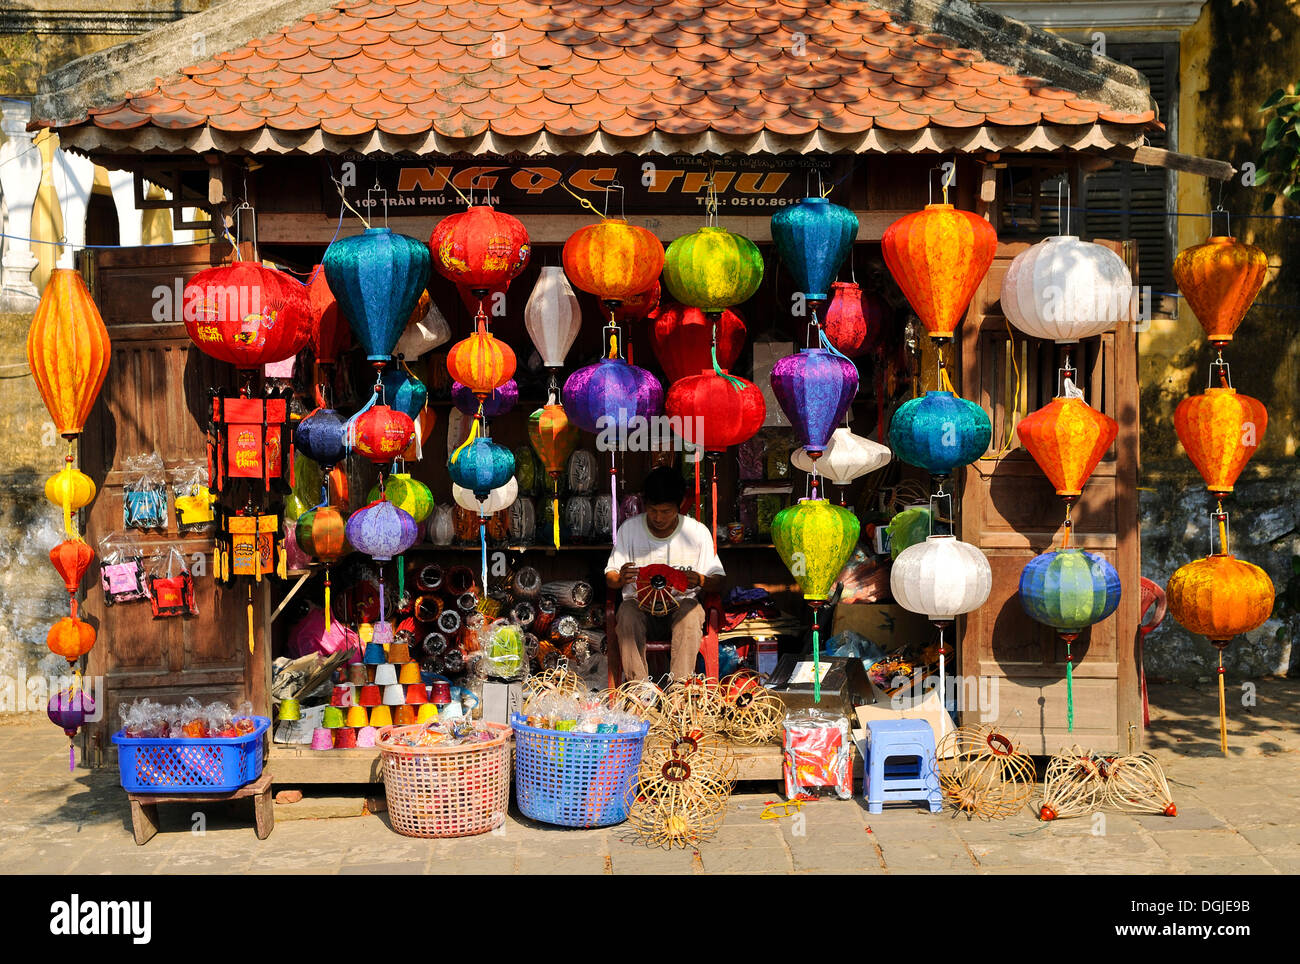 Typisches Geschäft mit Laternen, Hoi an, Vietnam, Südostasien  Stockfotografie - Alamy